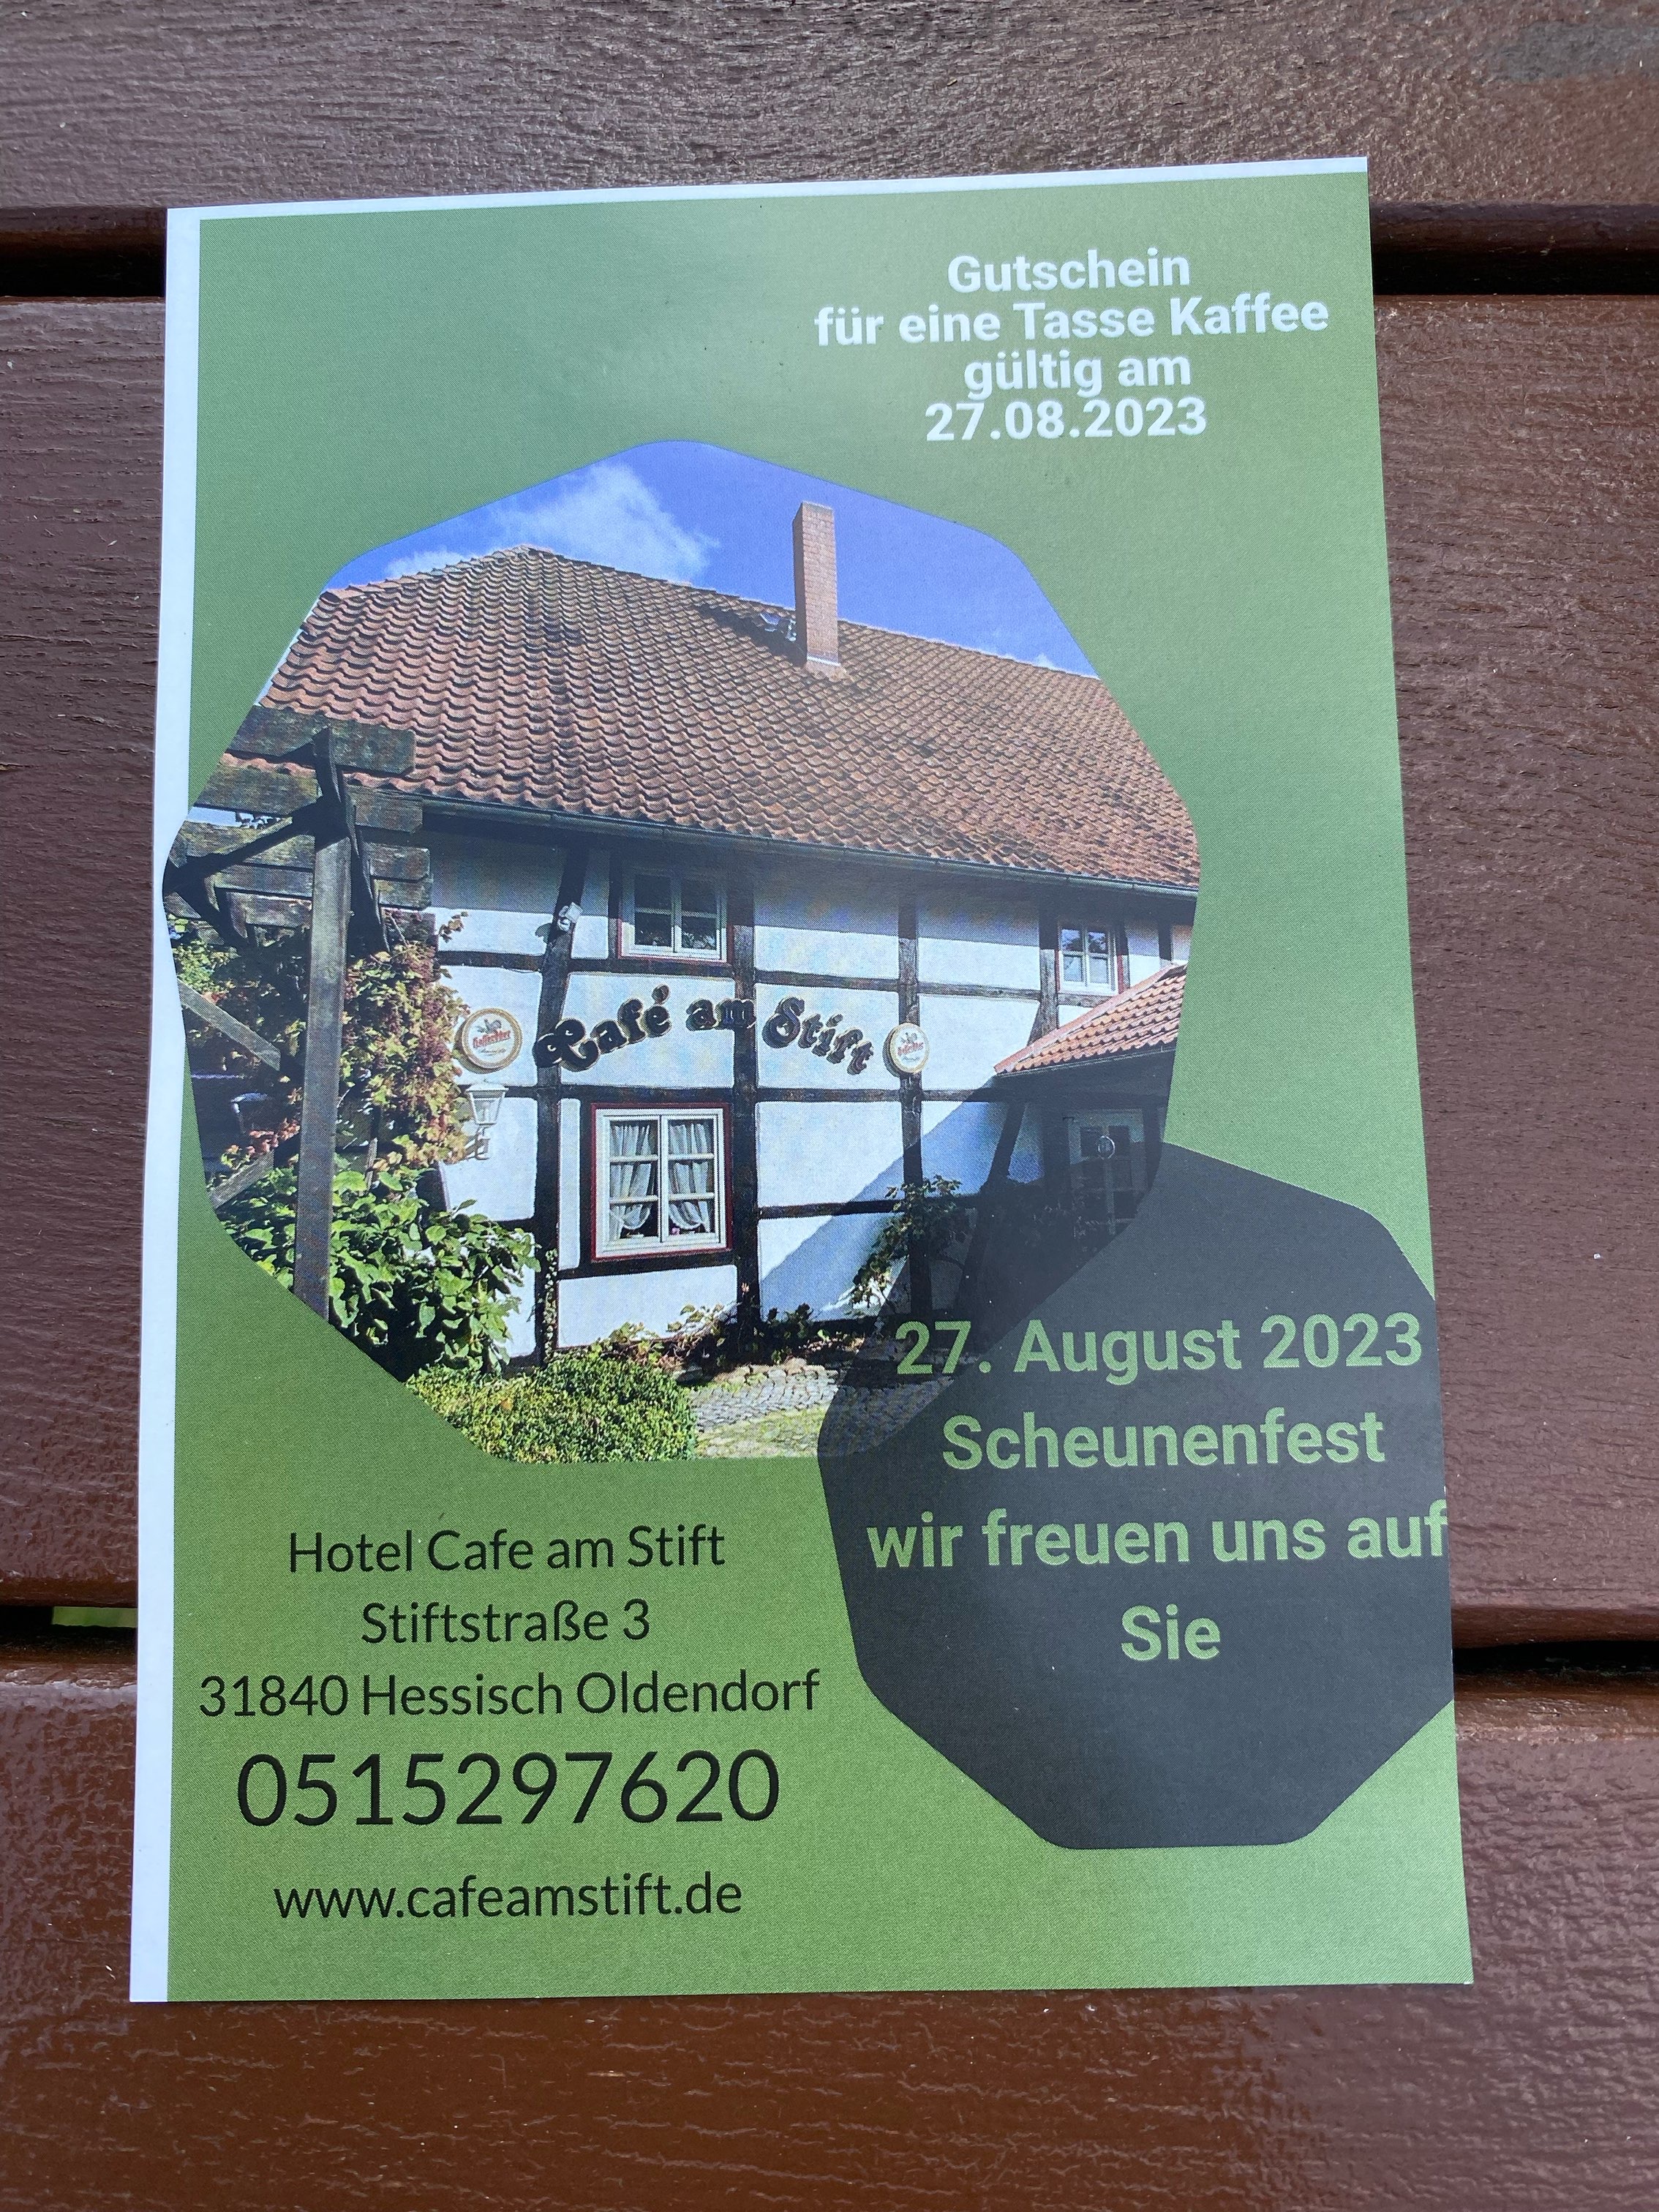 Bild 9 Hotel Cafe am Stift Ltd. Inh. Micaela-Nicole Simon in Hessisch Oldendorf